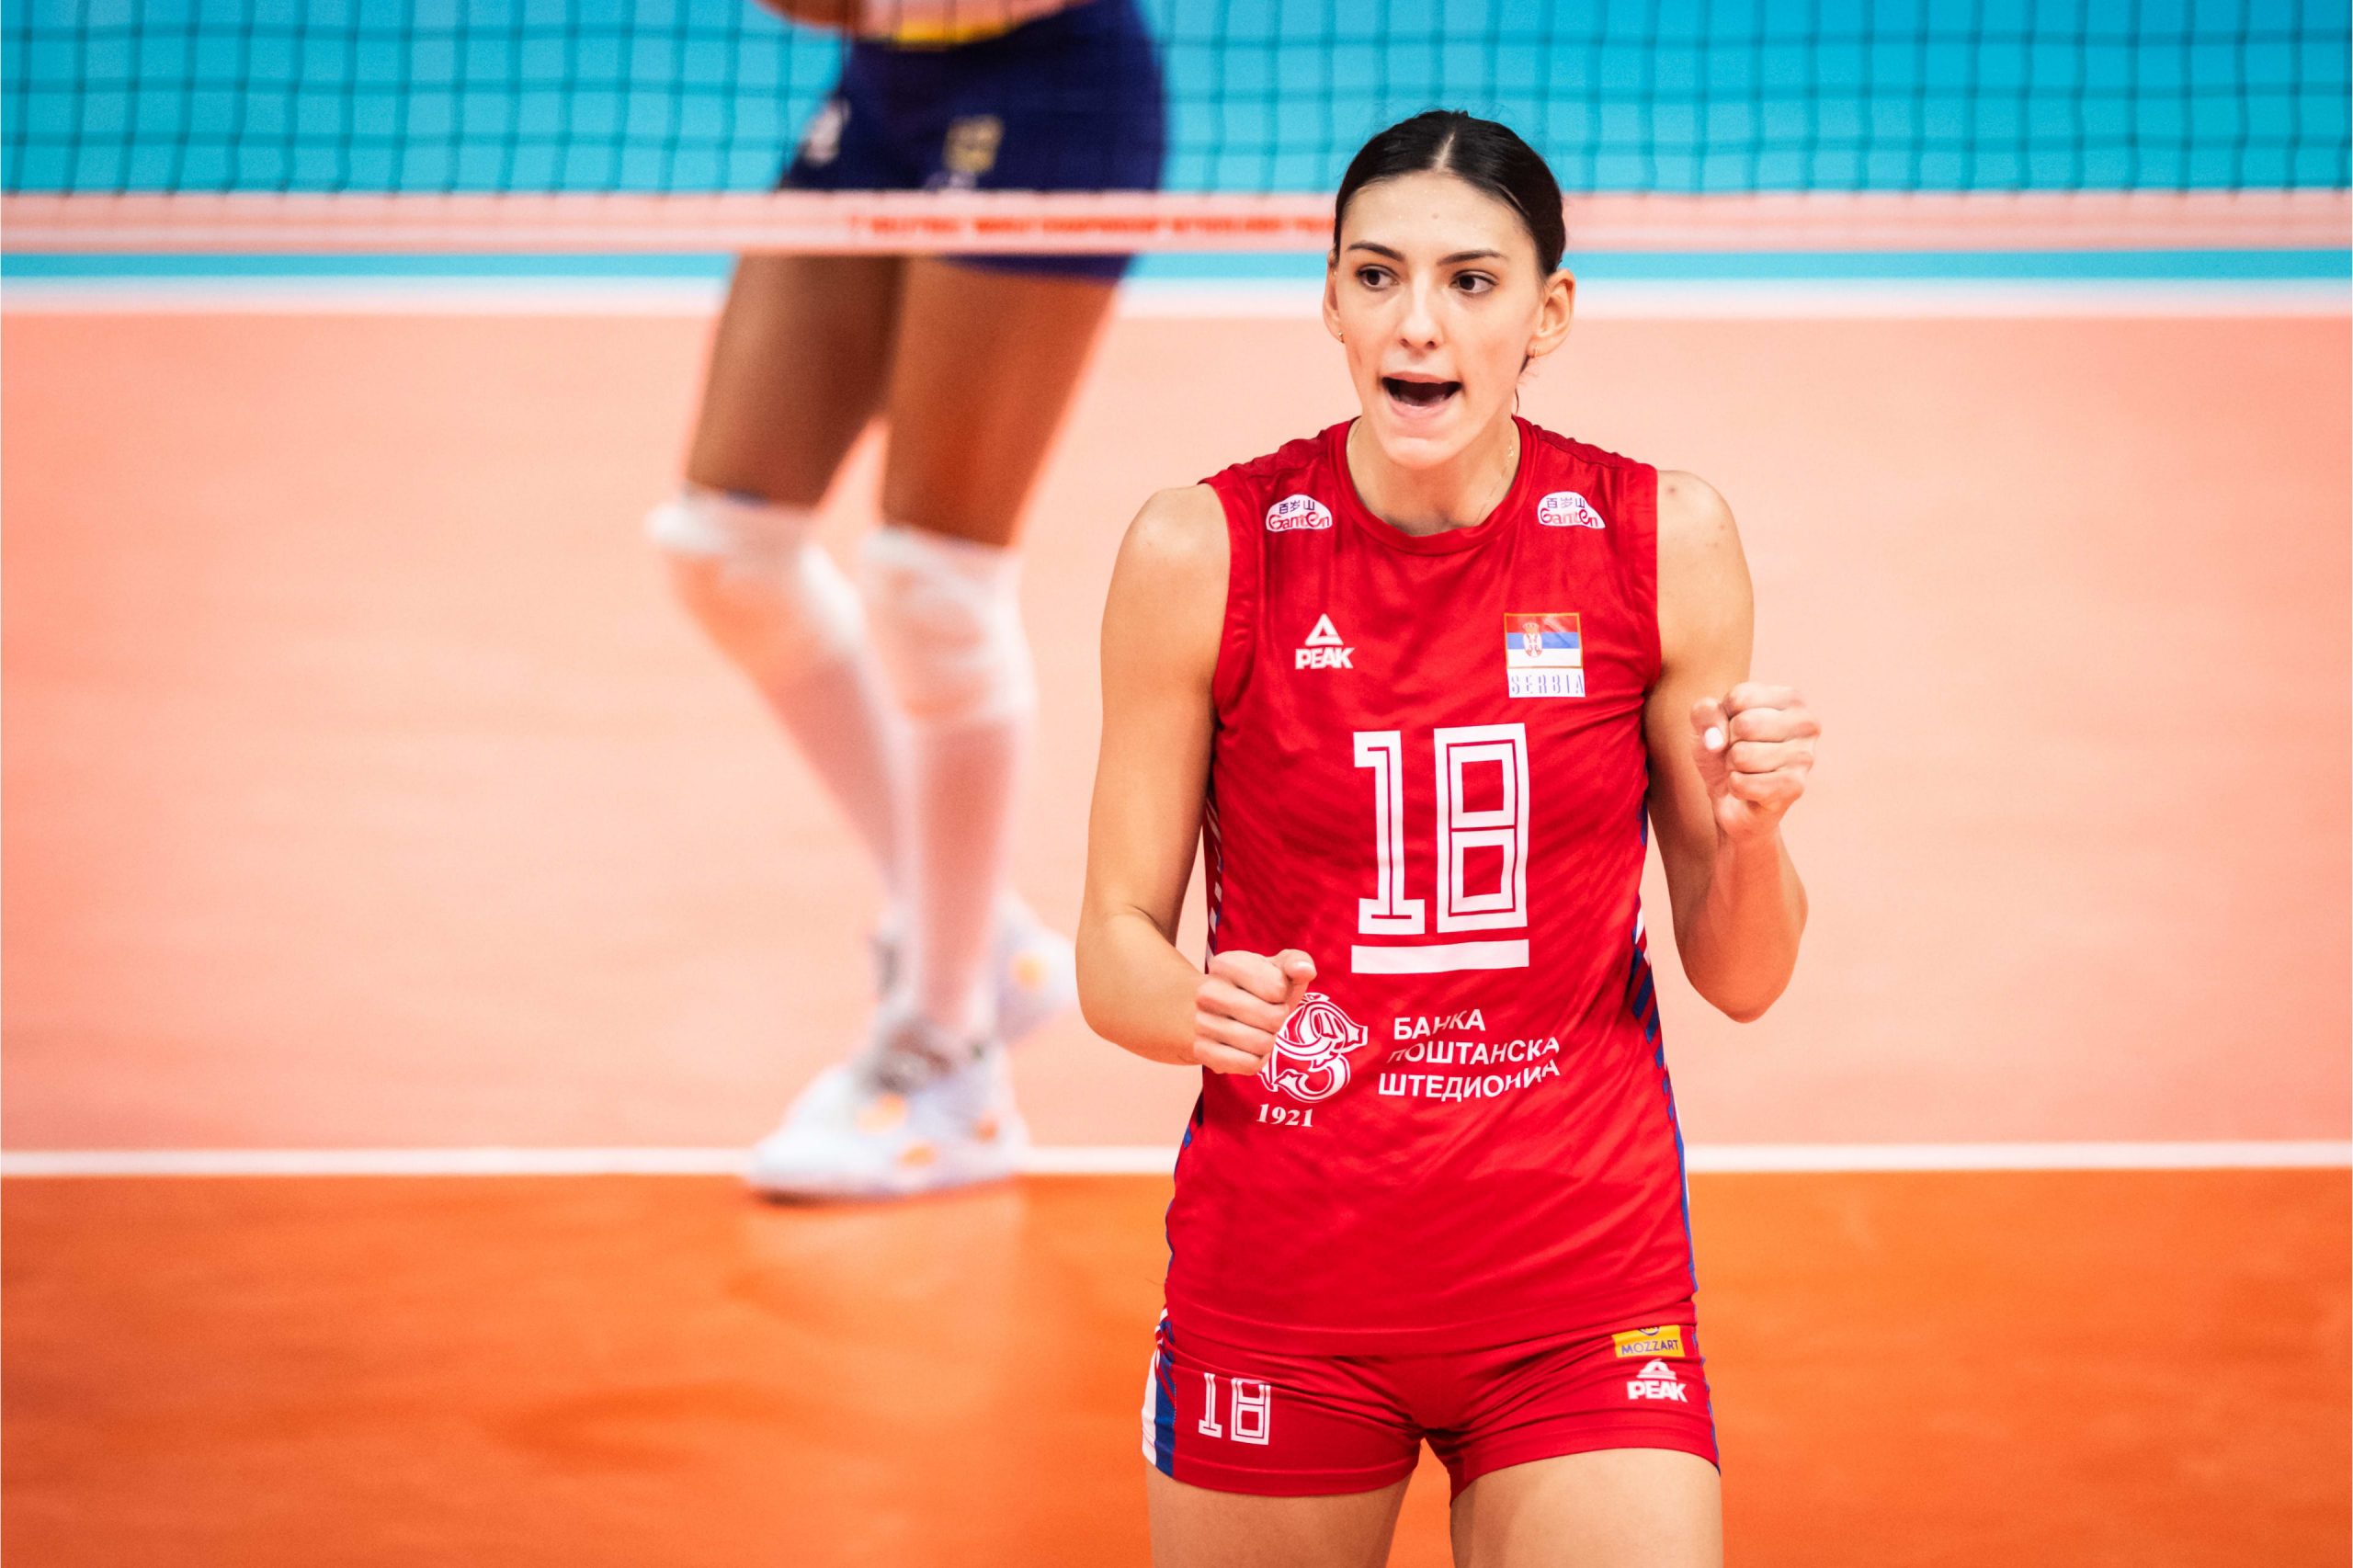 Tijana Boskovic, bir kez daha Sırbistan’ın “En Başarılı Kadın Oyuncusu” oldu